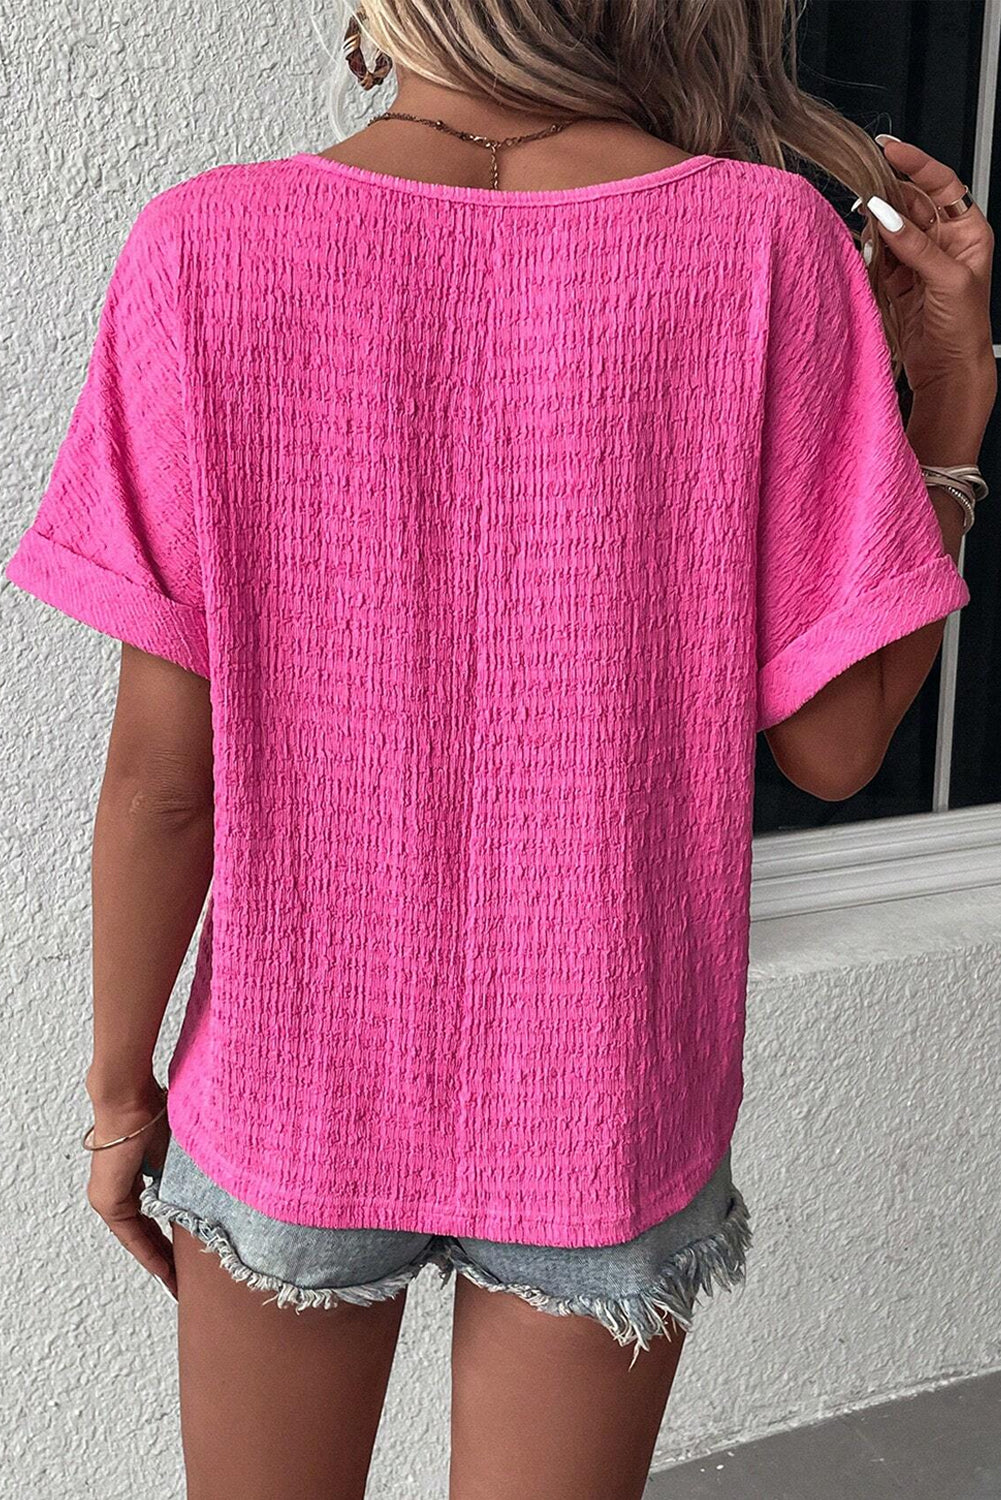 T-shirt rosa brillante con scollo a V, maniche piegate testurizzate taglie forti